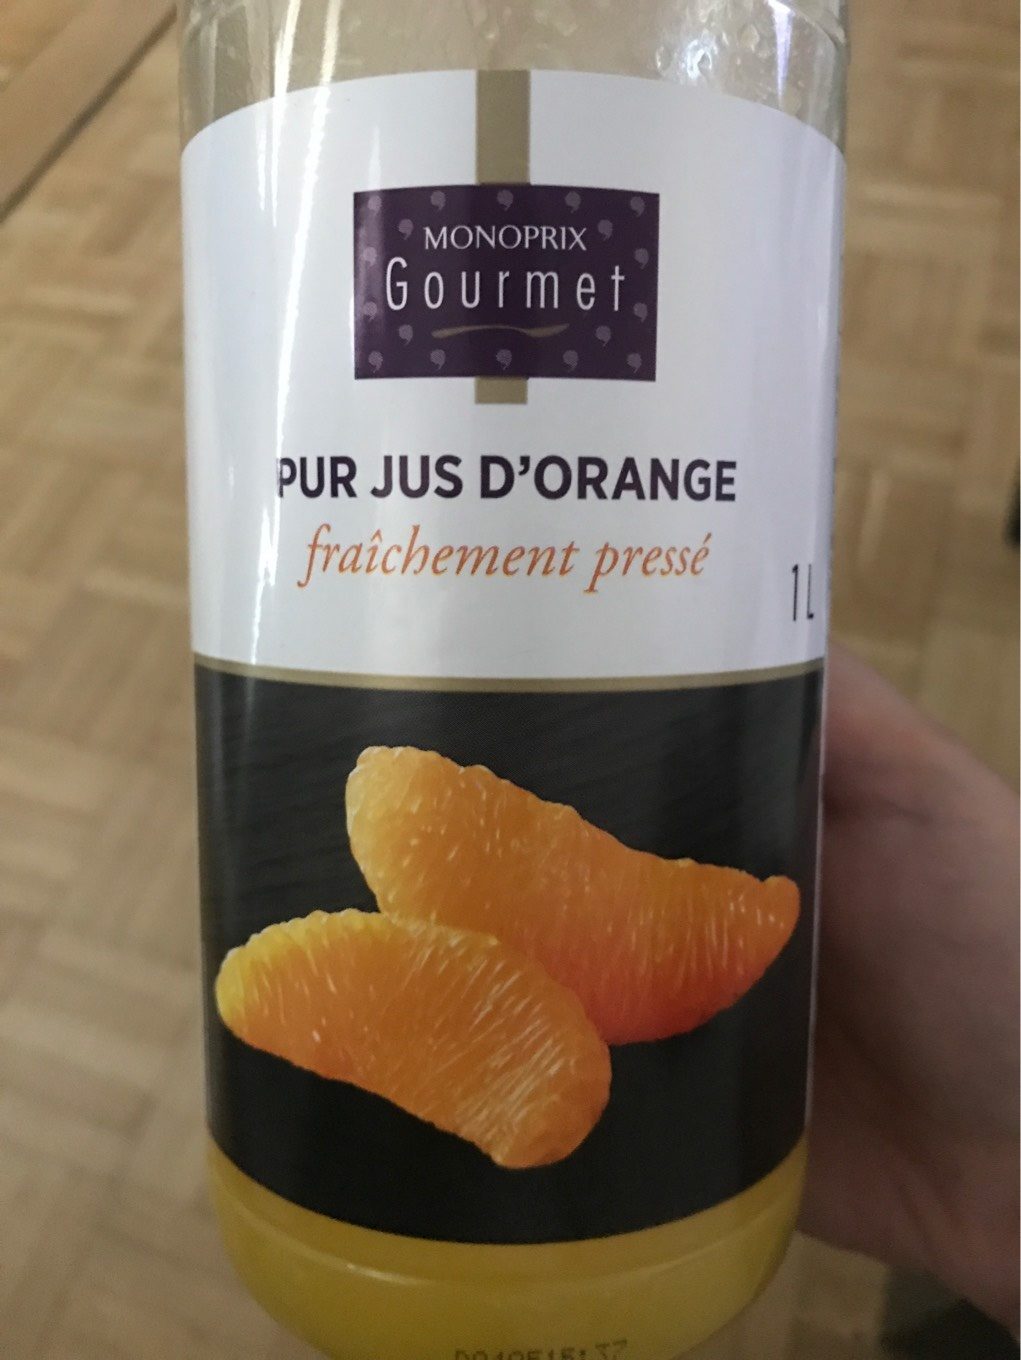 Pur jus d'orange fraichement pressé - Produit